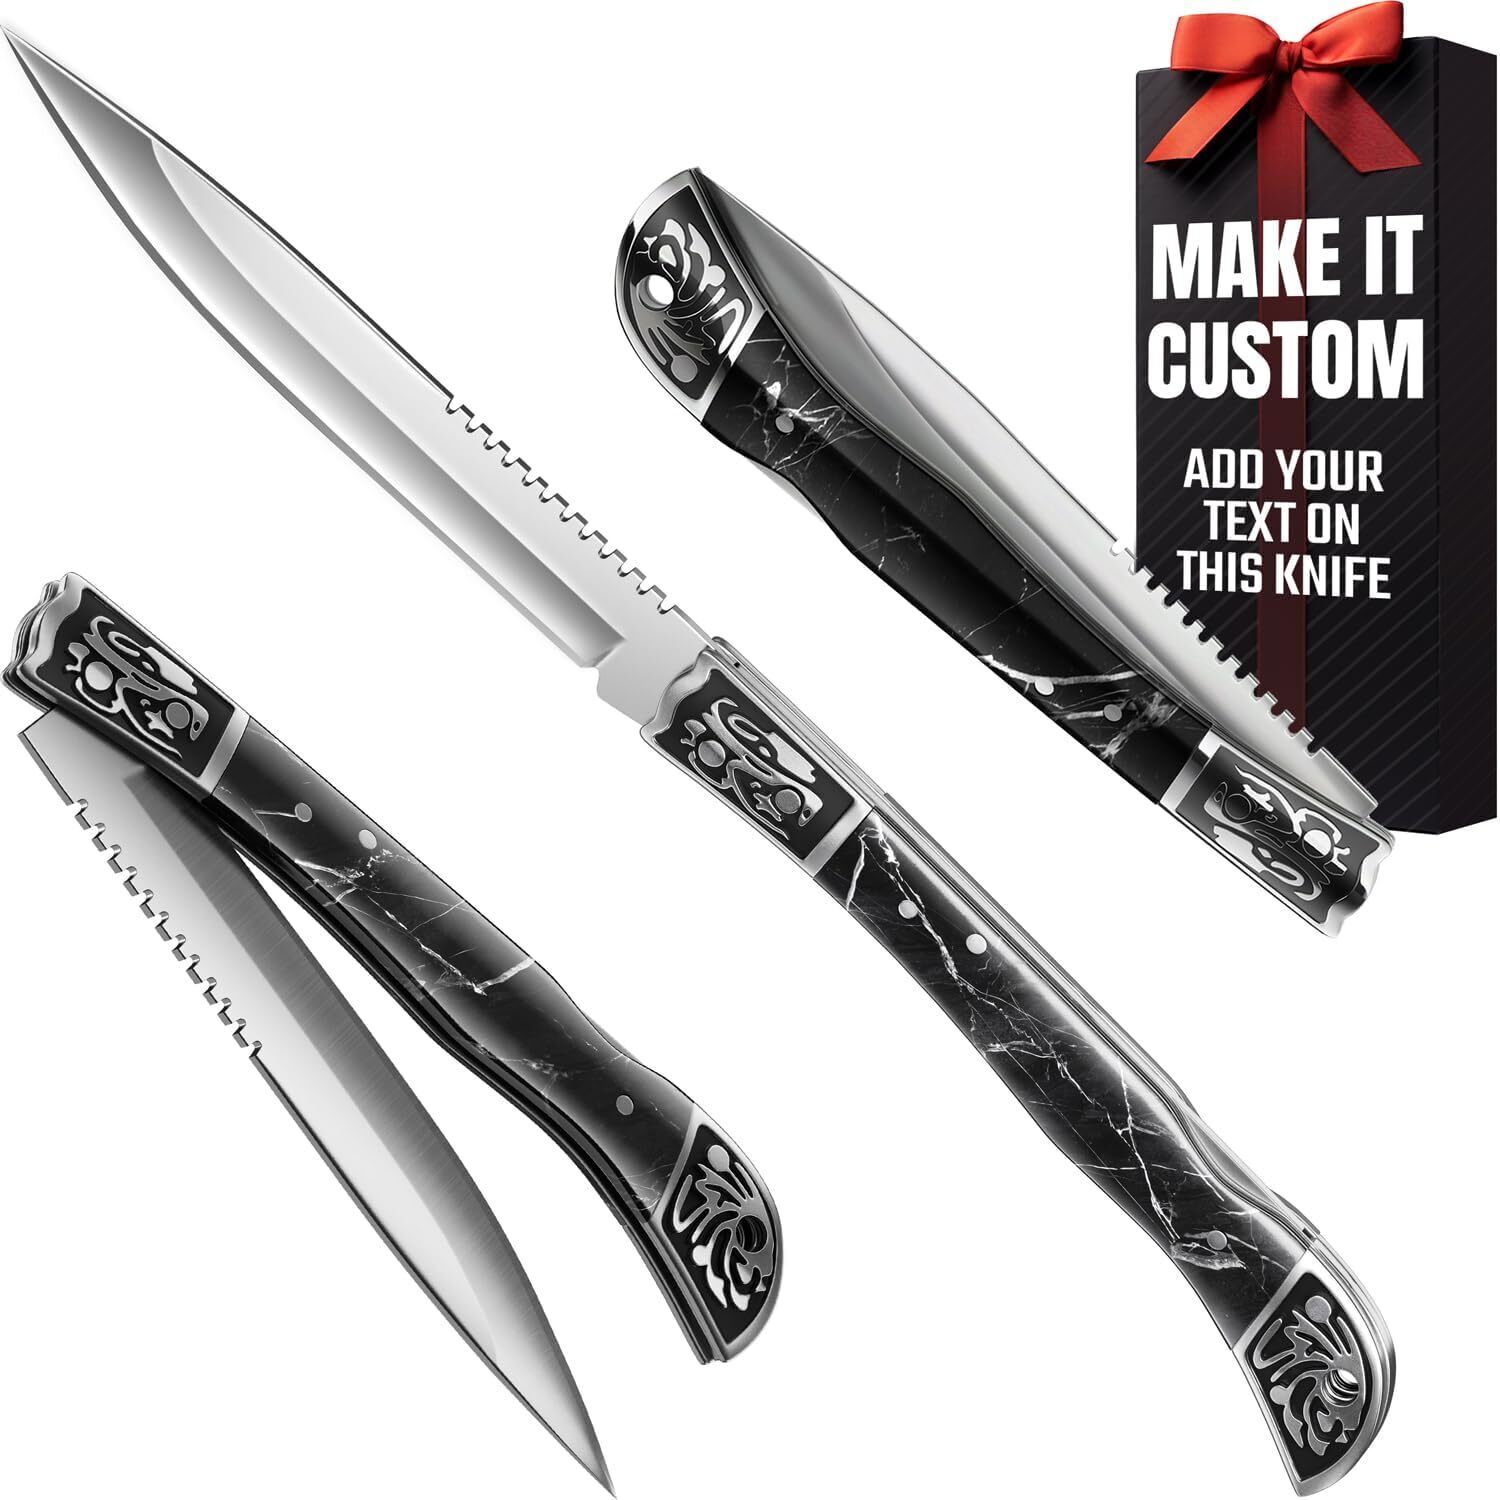 Pocket Knife for Men 4 inch Folding Knife Cool Design with Black Resin Handle